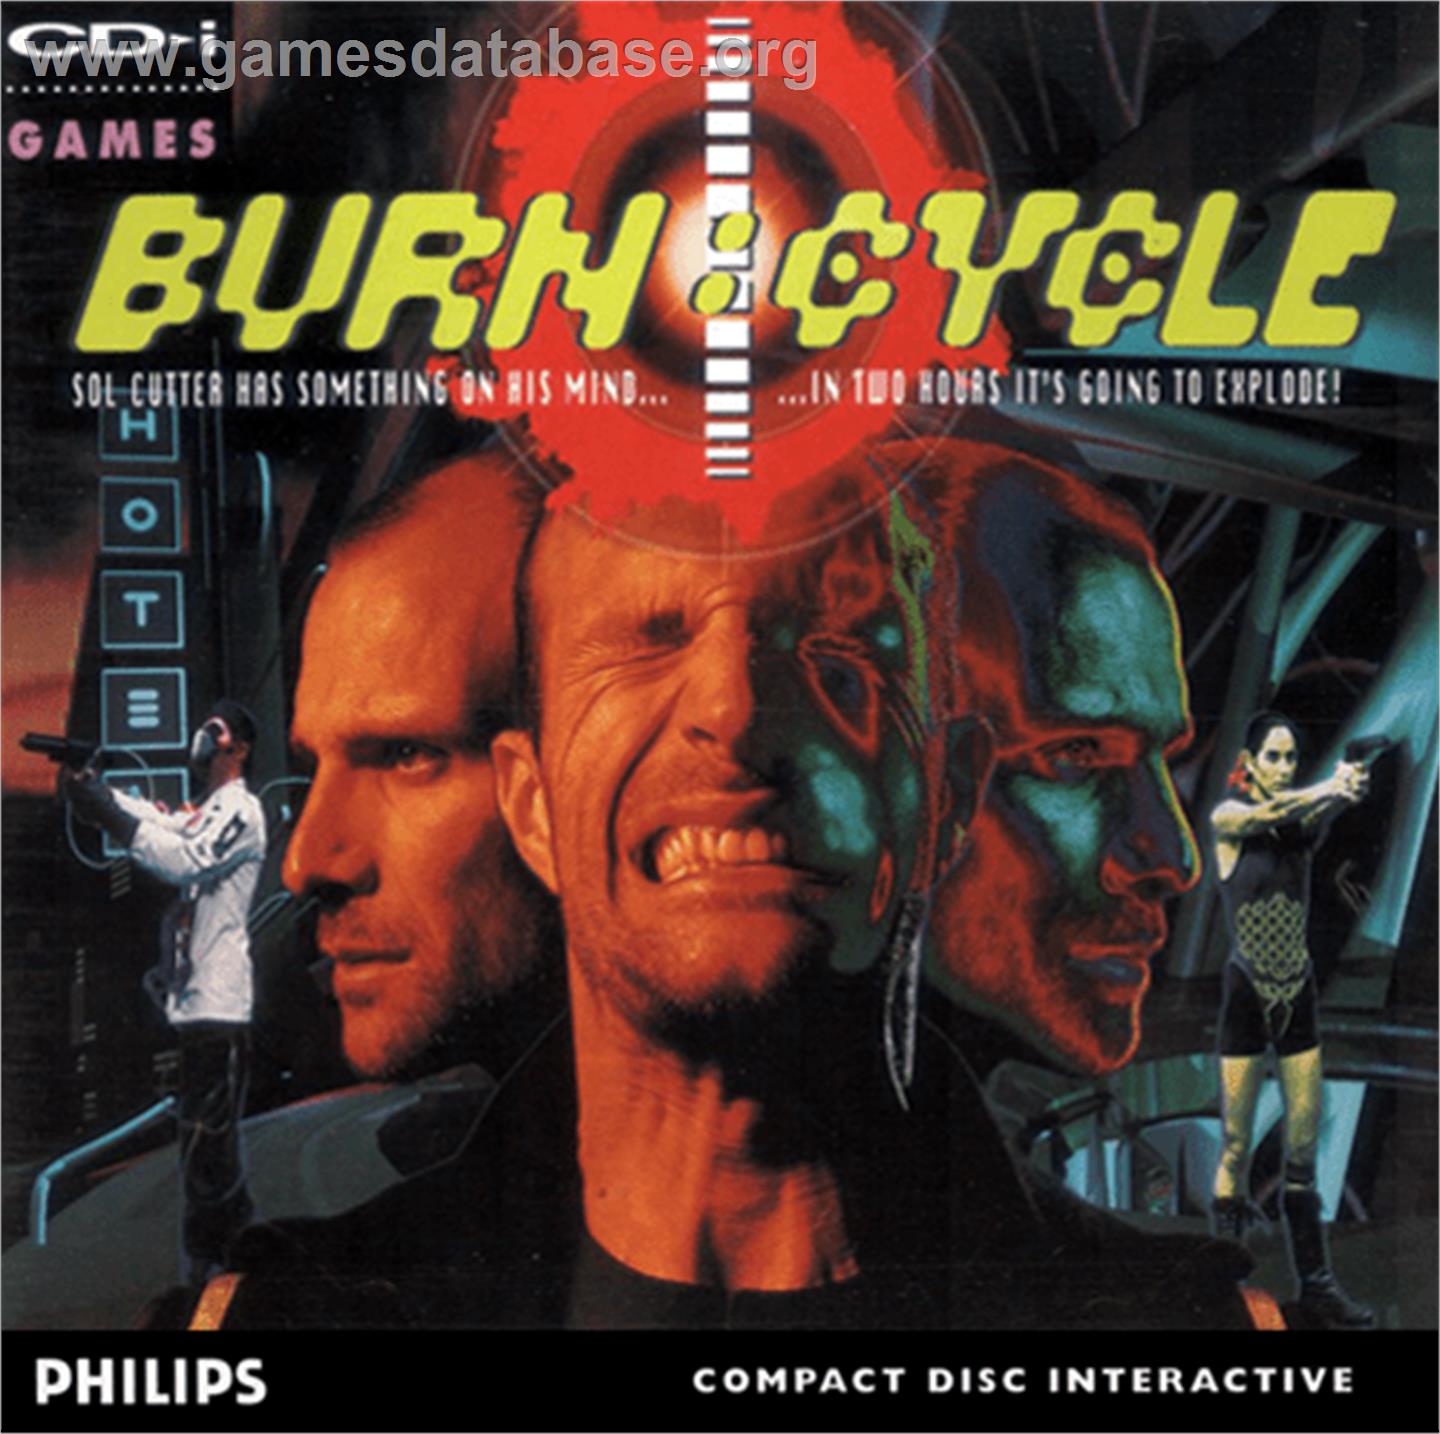 Burn: Cycle - Philips CD-i - Artwork - Box